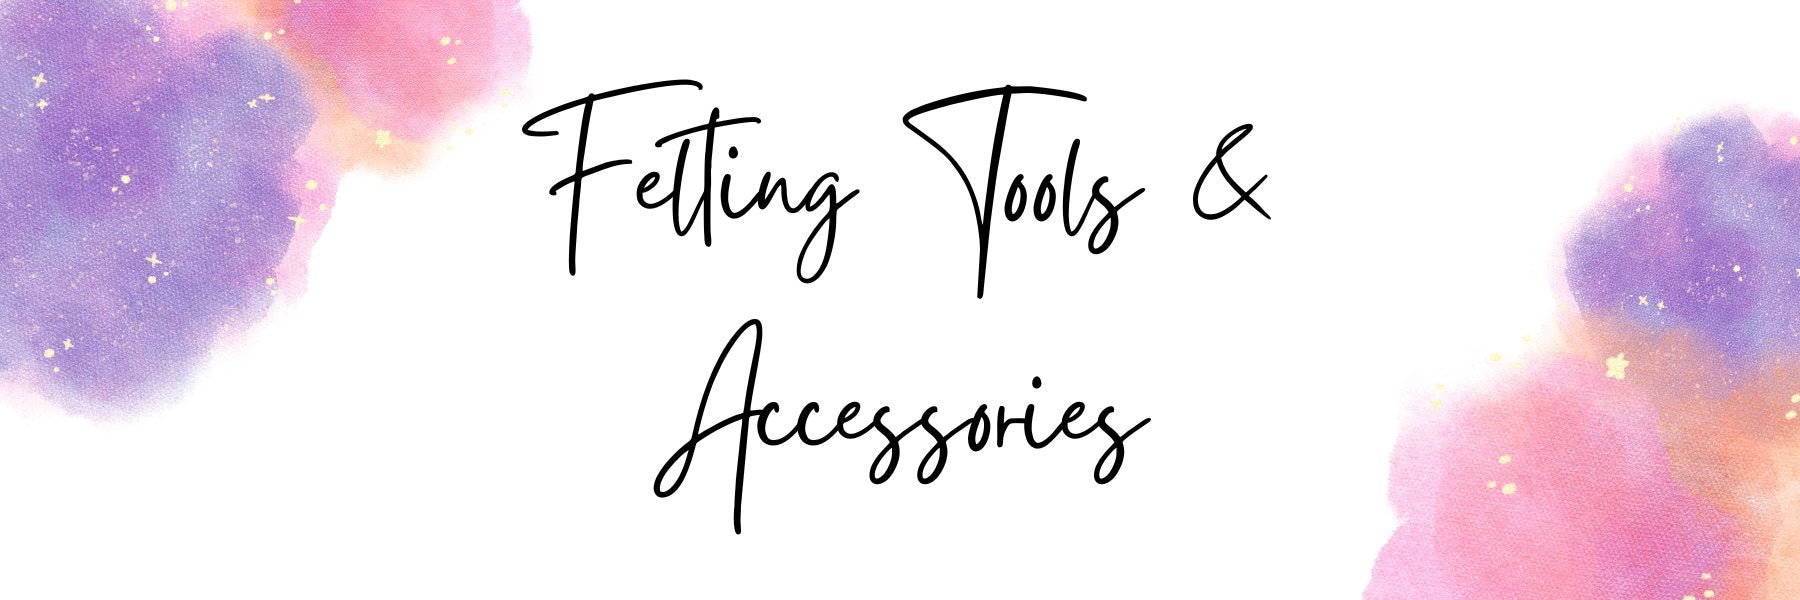 General Felting Tools & Accessories